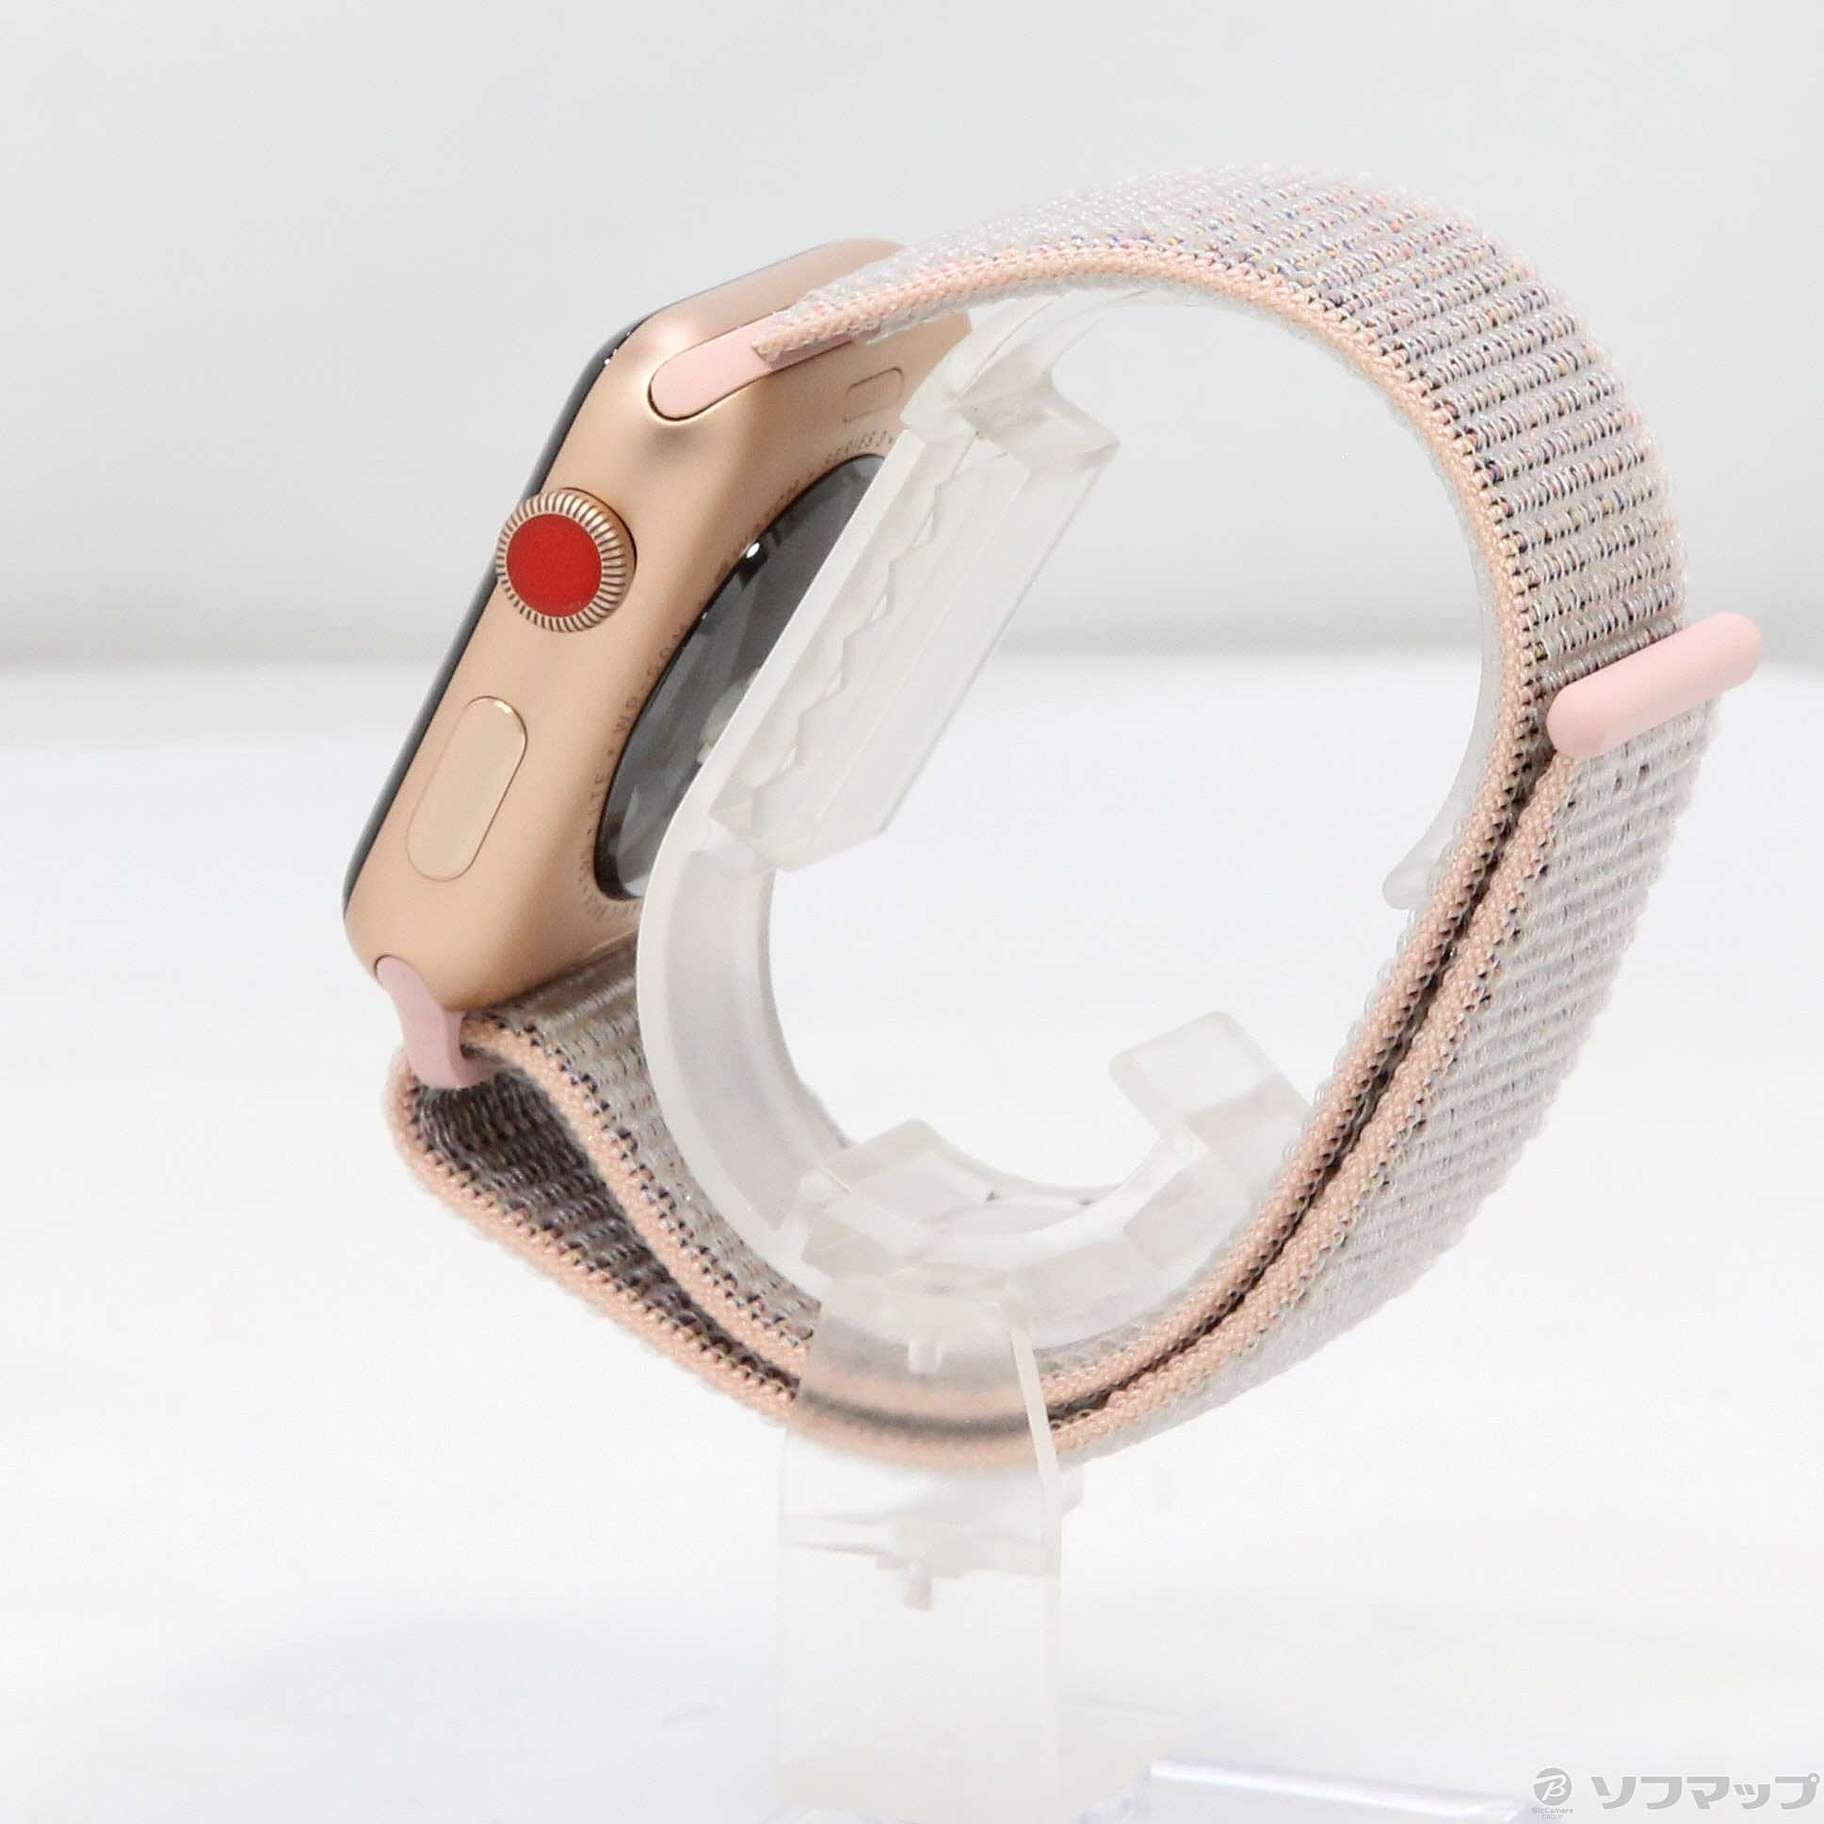 中古】Apple Watch Series 3 GPS + Cellular 42mm ゴールド